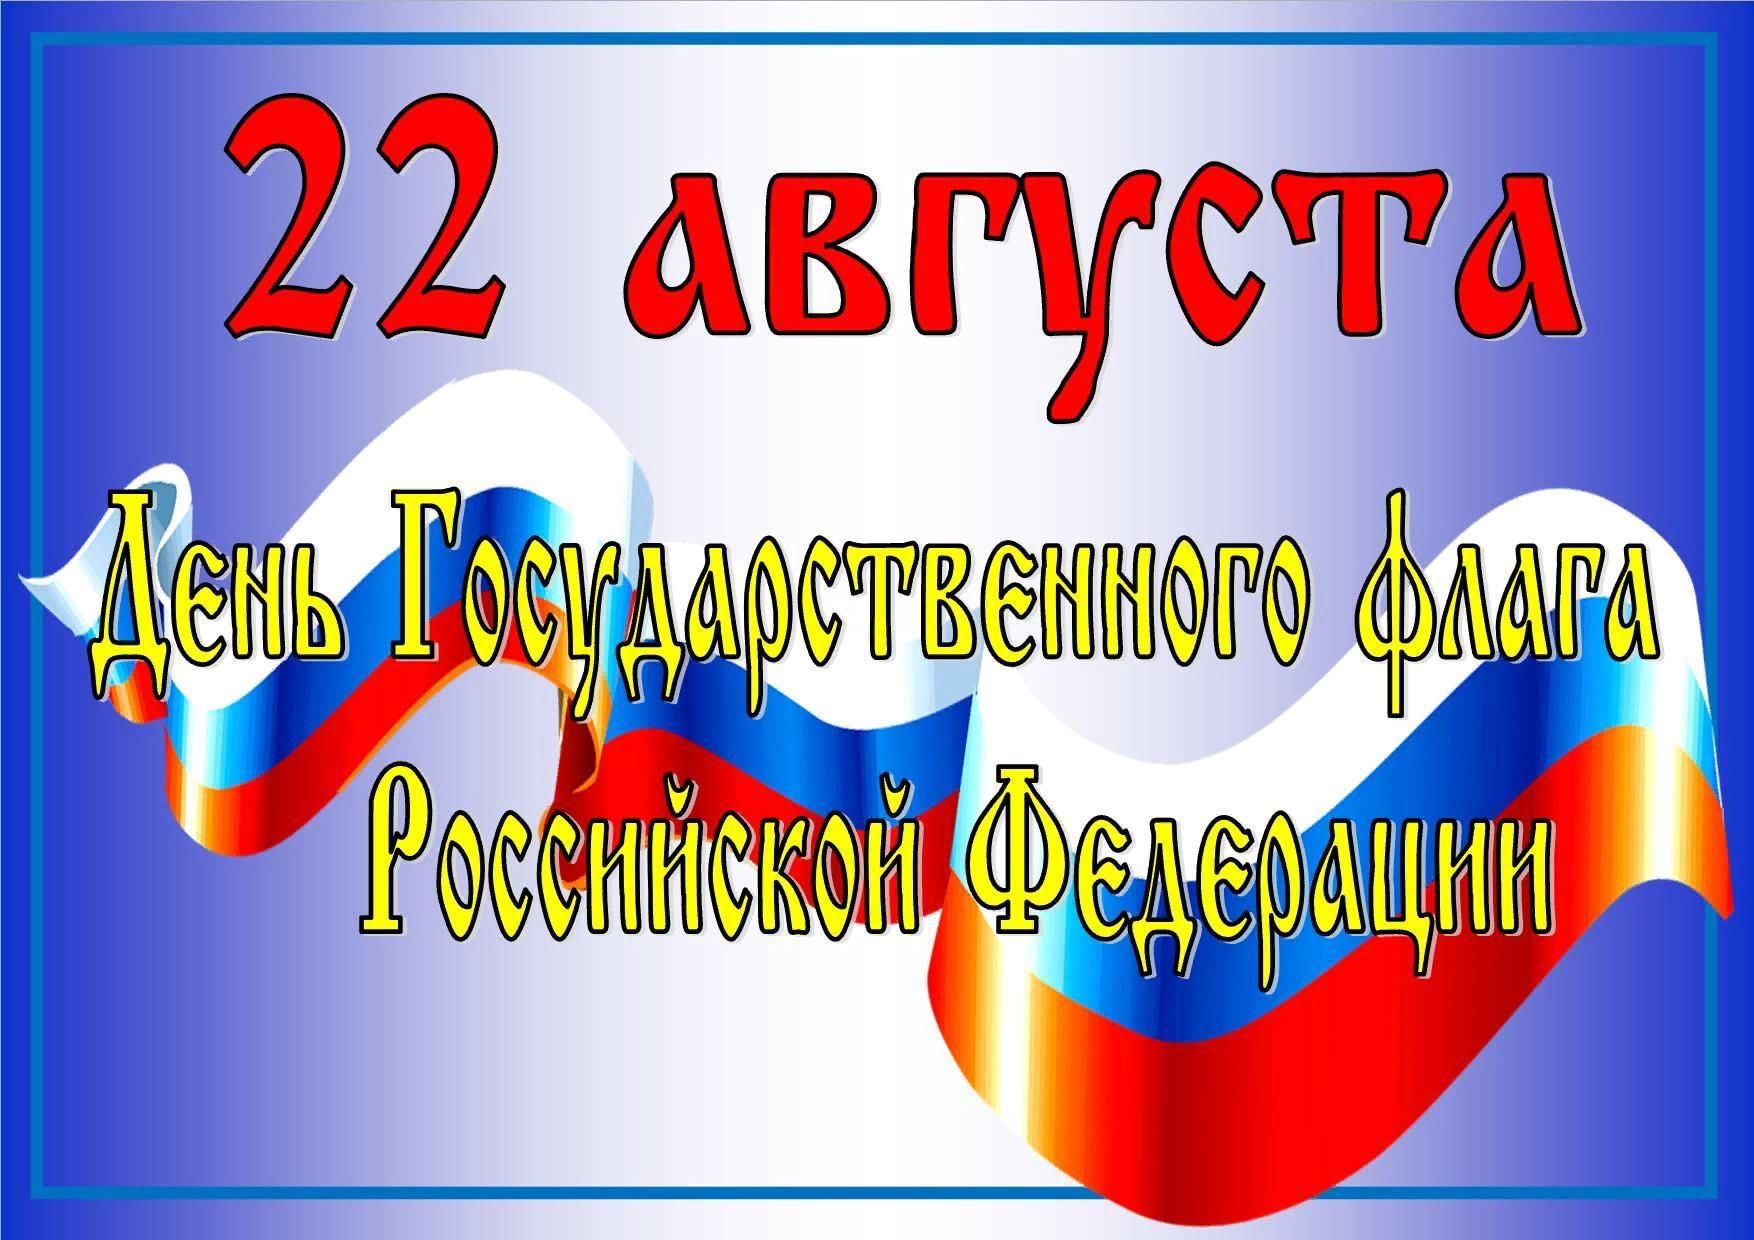 22 Августа день государственного флага России